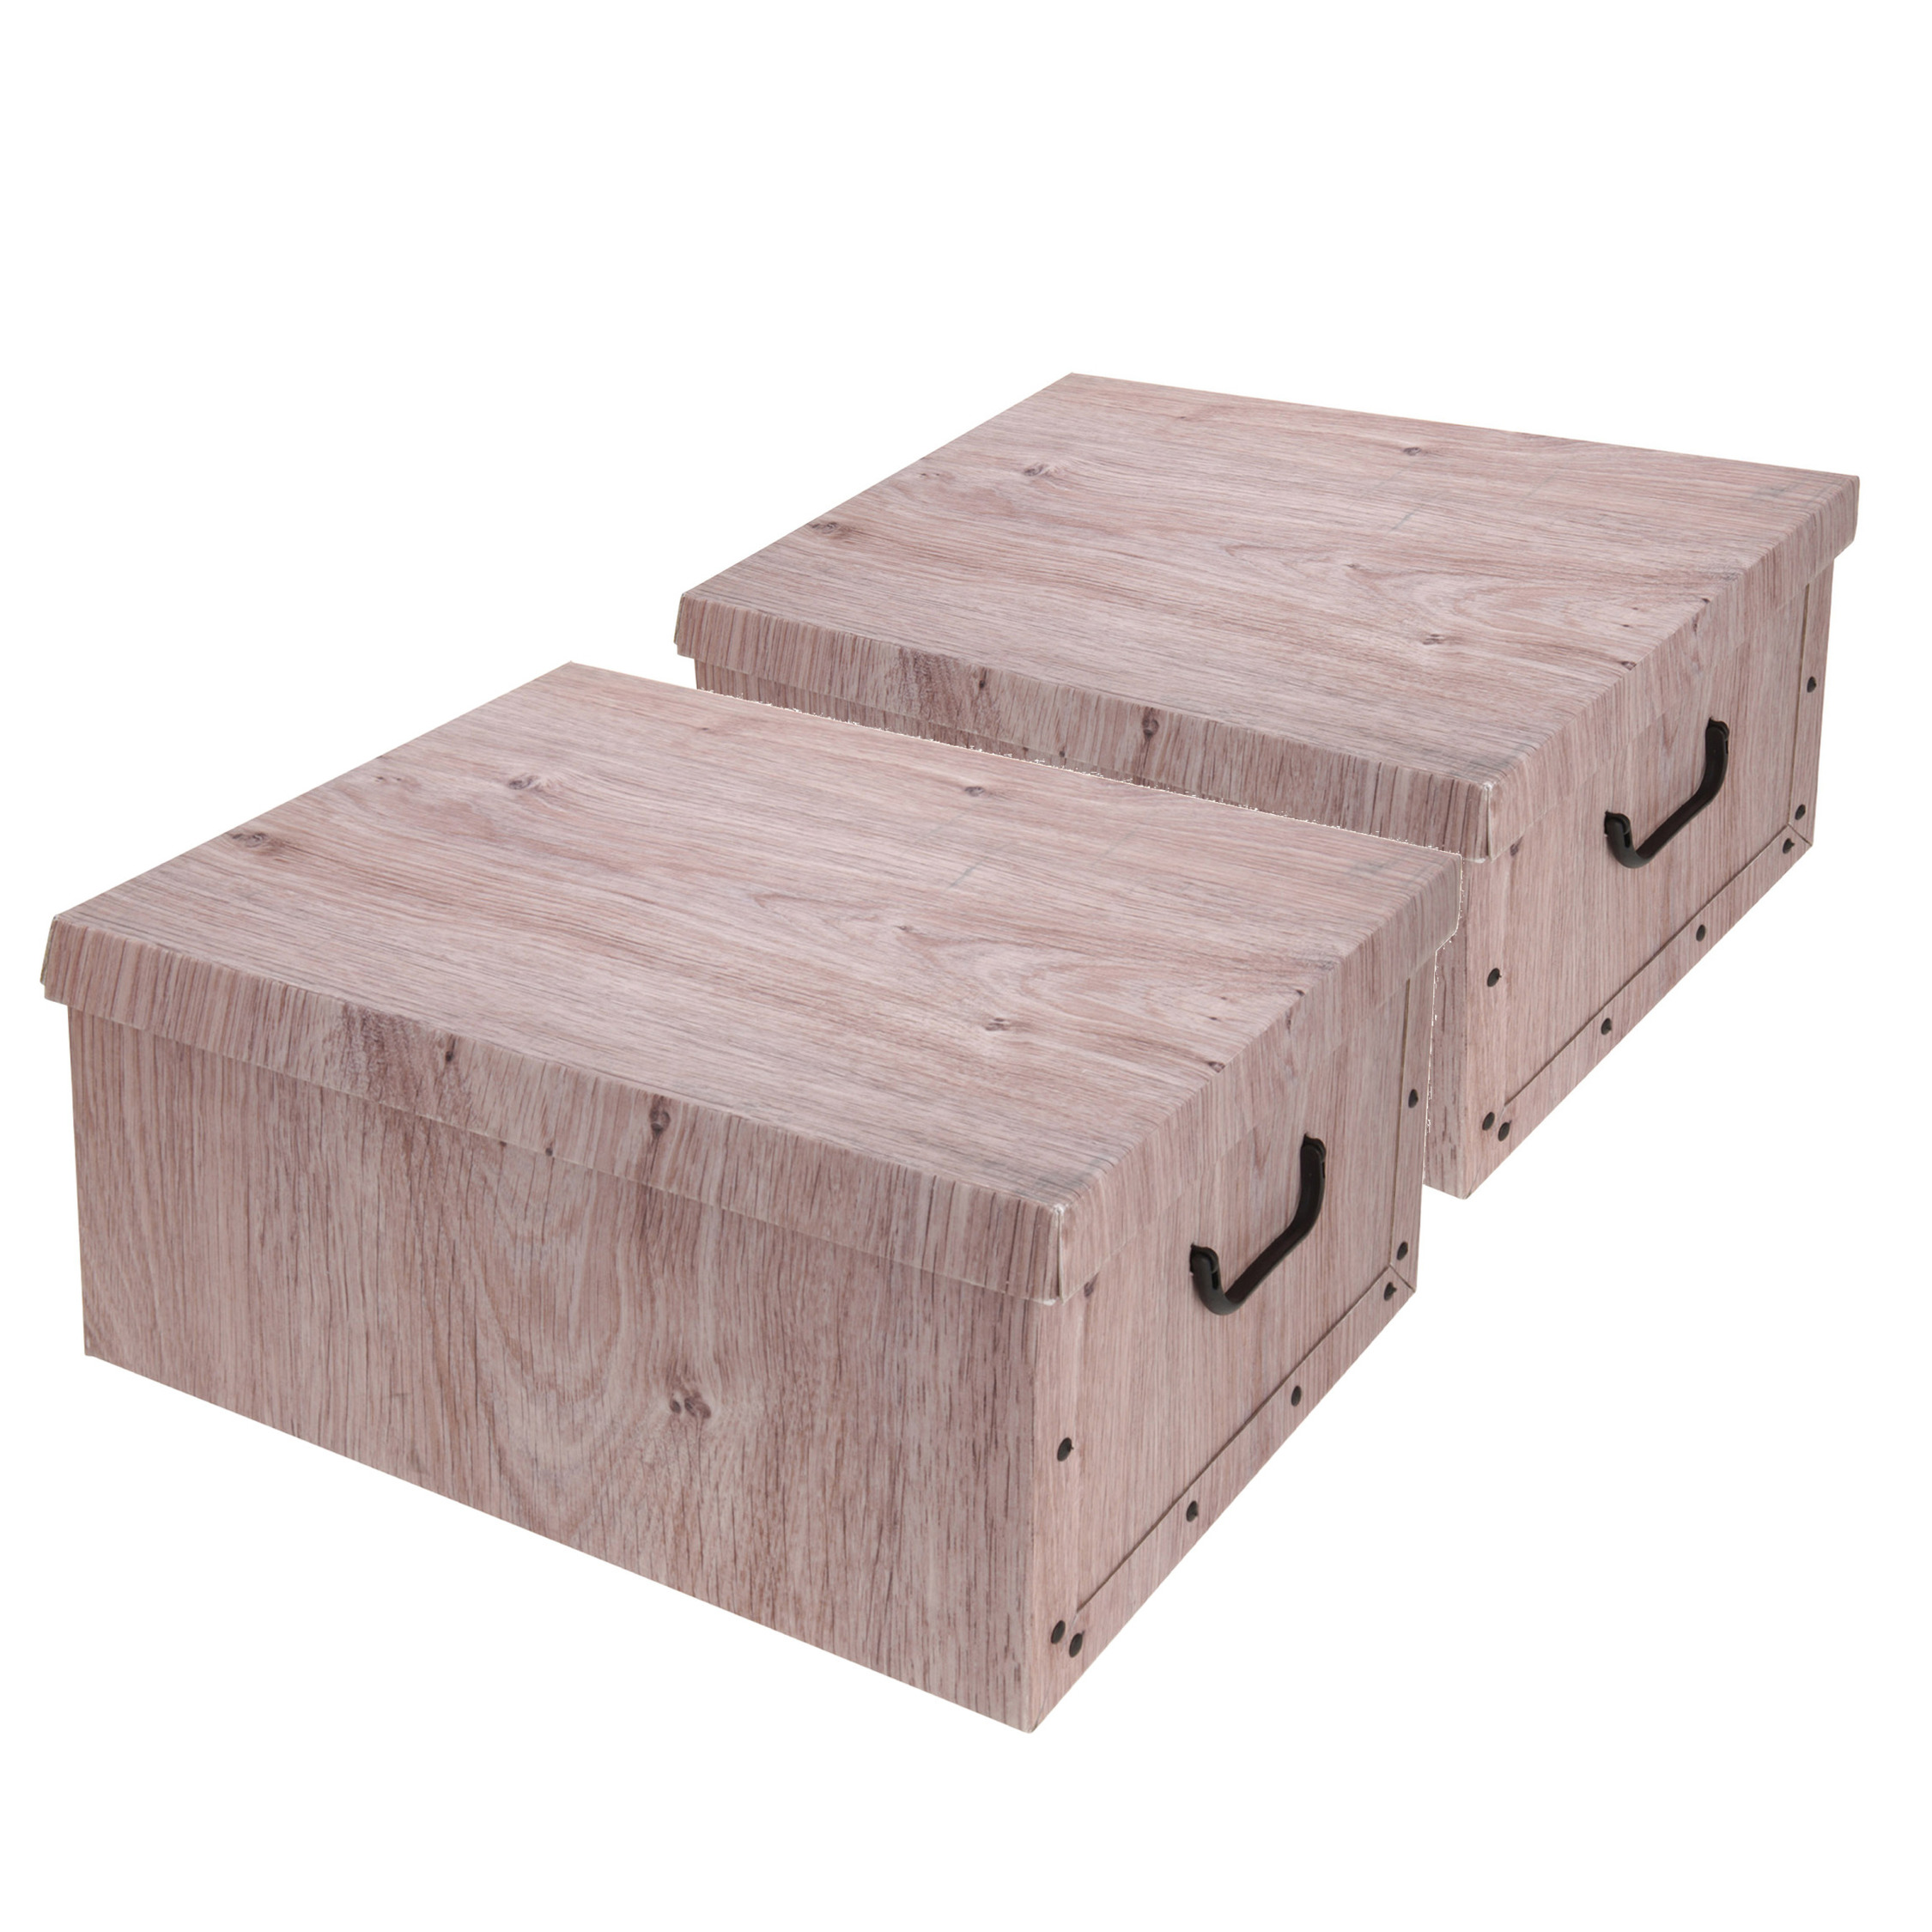 Set van 6x stuks opbergdoos-opberg box van karton met hout print bruin 37 x 30 x 16 cm